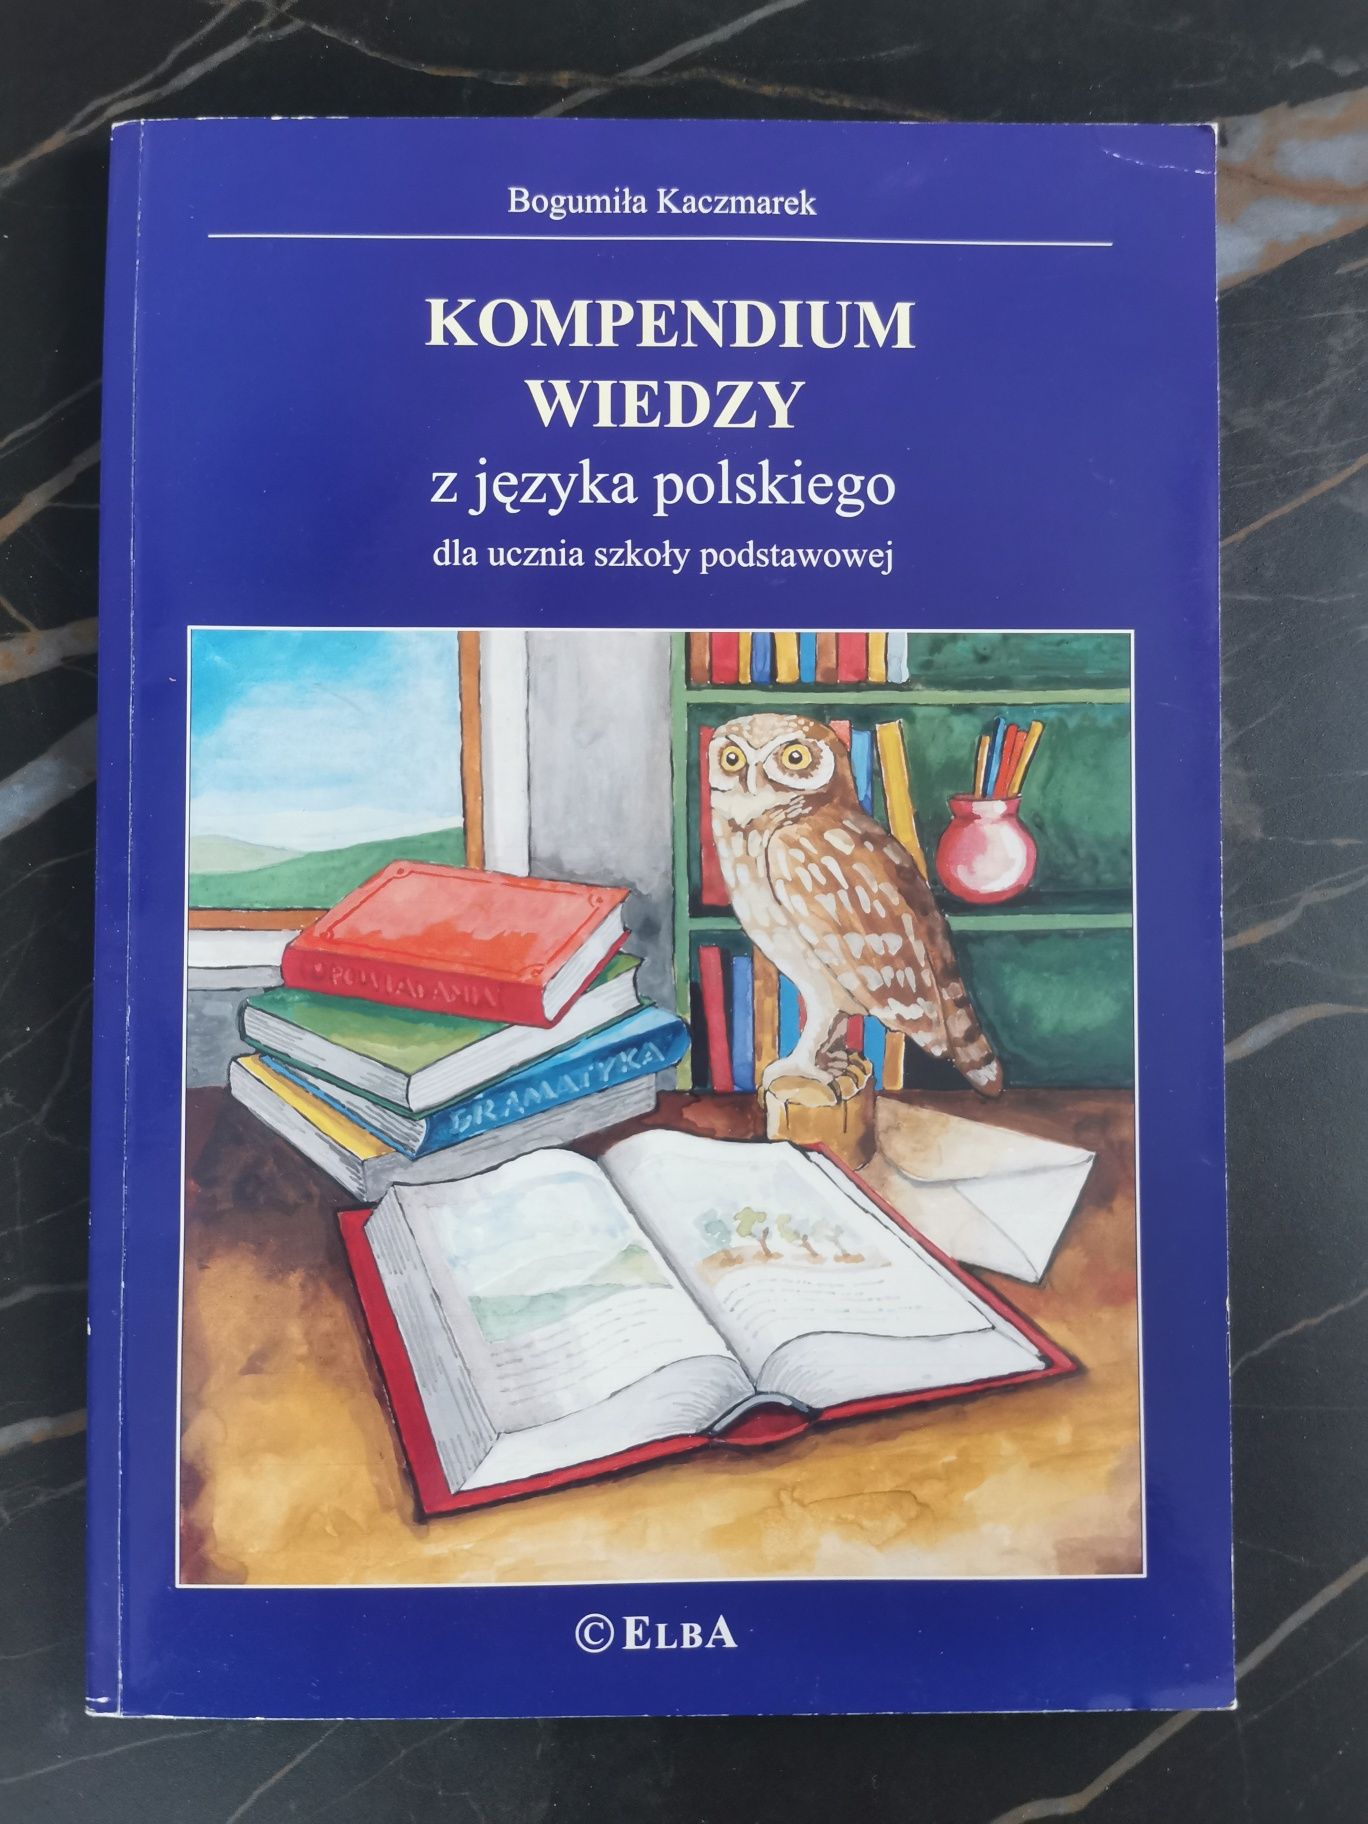 Kompendium wiedzy z języka polskiego dla ucznia szkoły podstawowej.